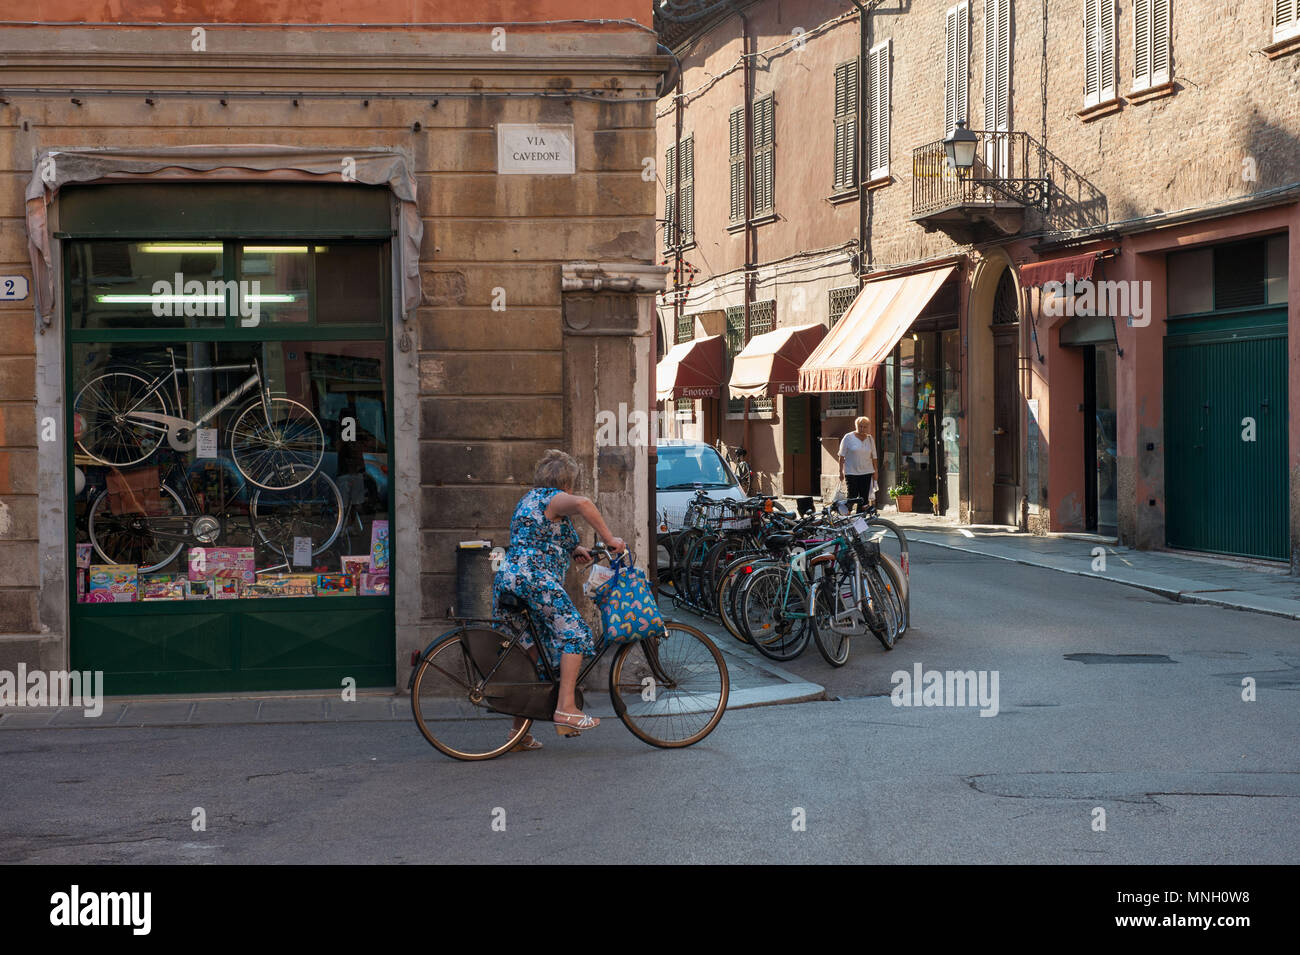 Ferrara. Street scene. Italy. Stock Photo